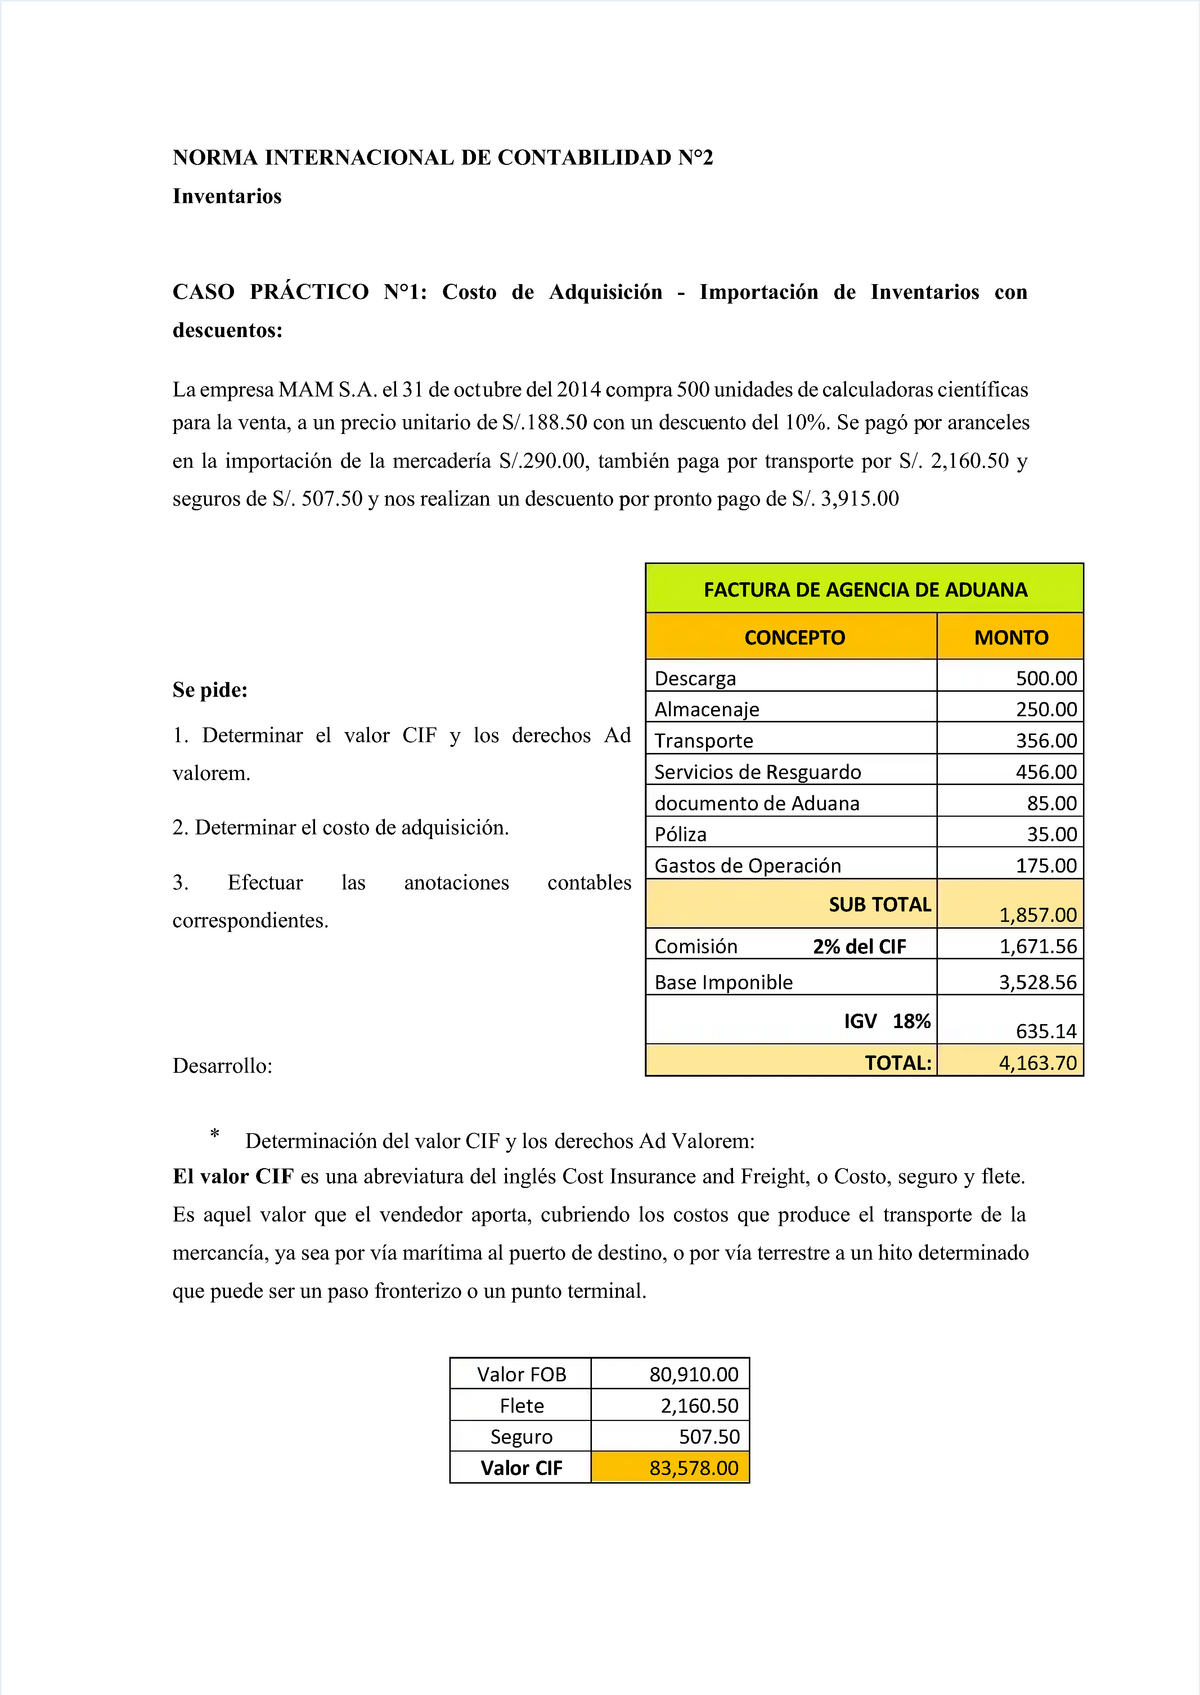 Pdf Nic 2 Compress Casos Practicos De La Nic 2 Norma Internacional De Contabilidad N°2norma 5623